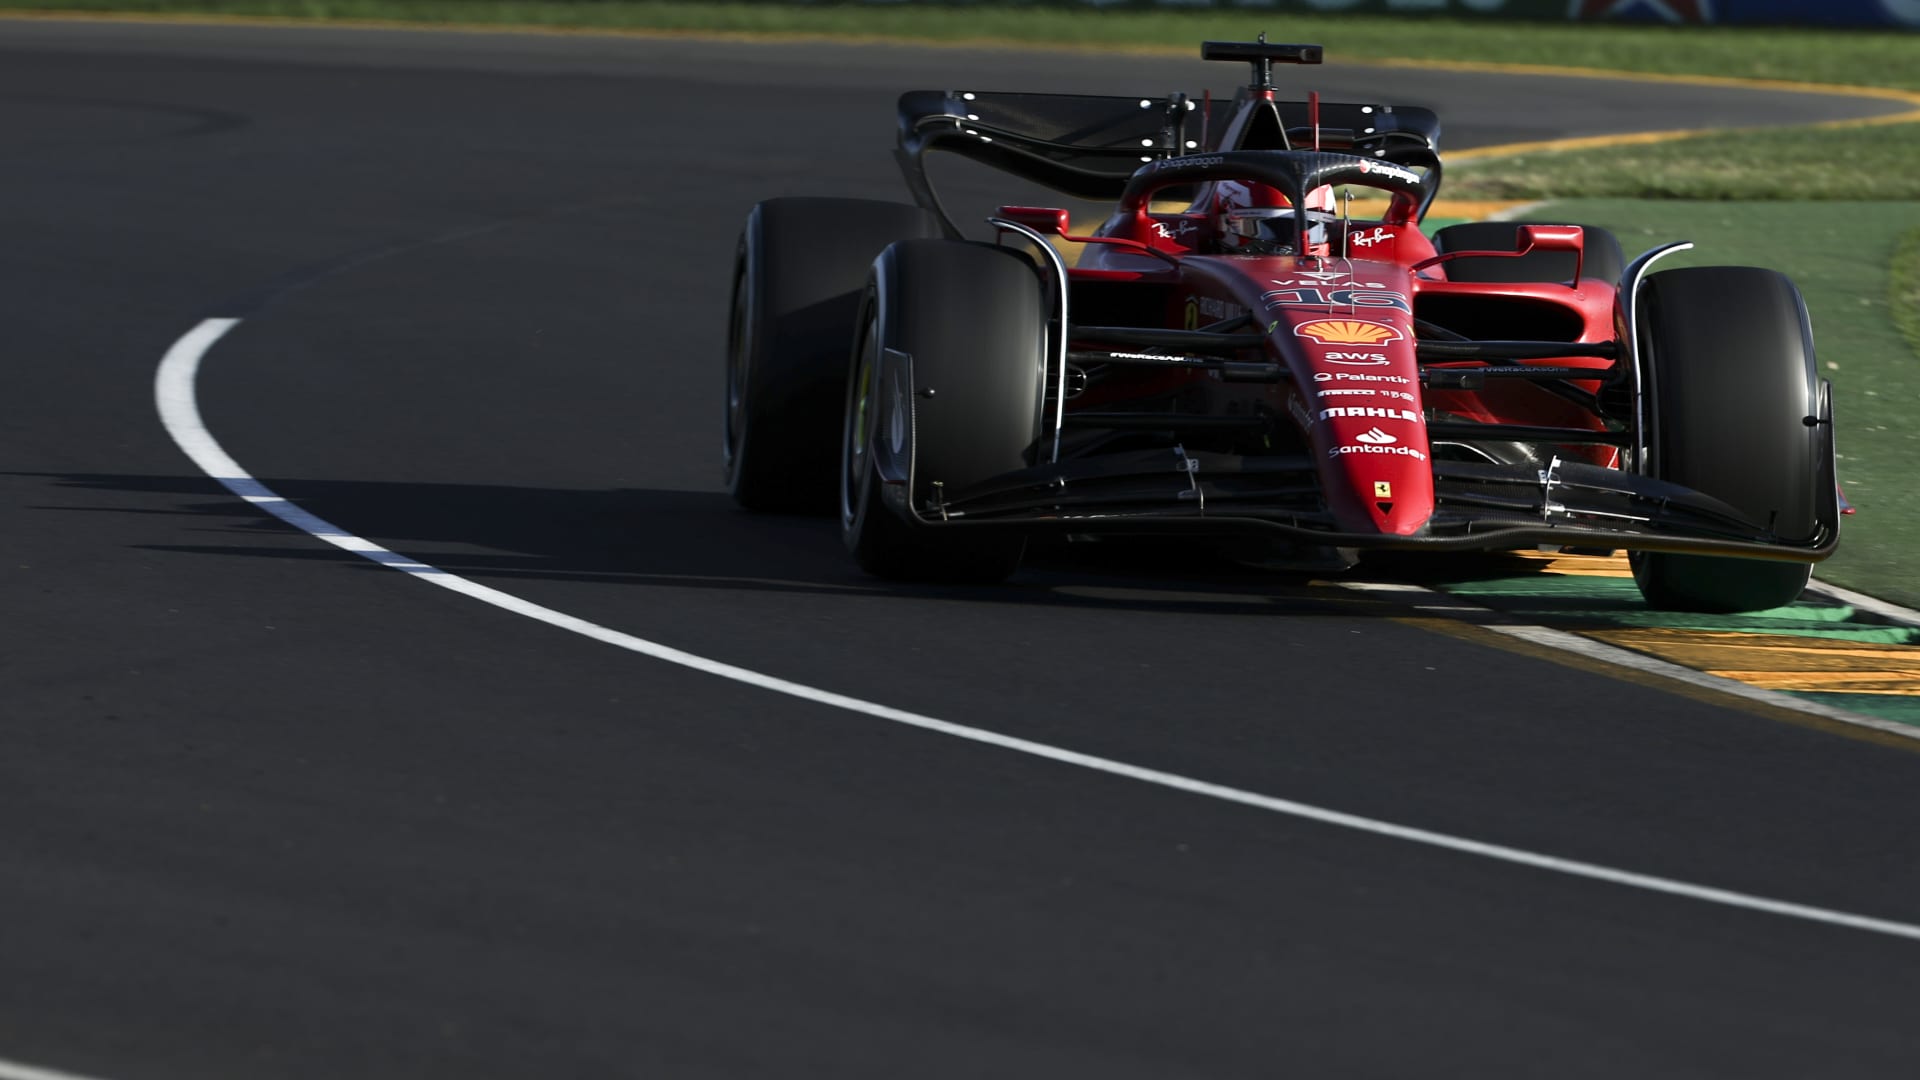  Monacký závodník Charles Leclerc ovládl Velkou cenu Austrálie vozů formule 1.